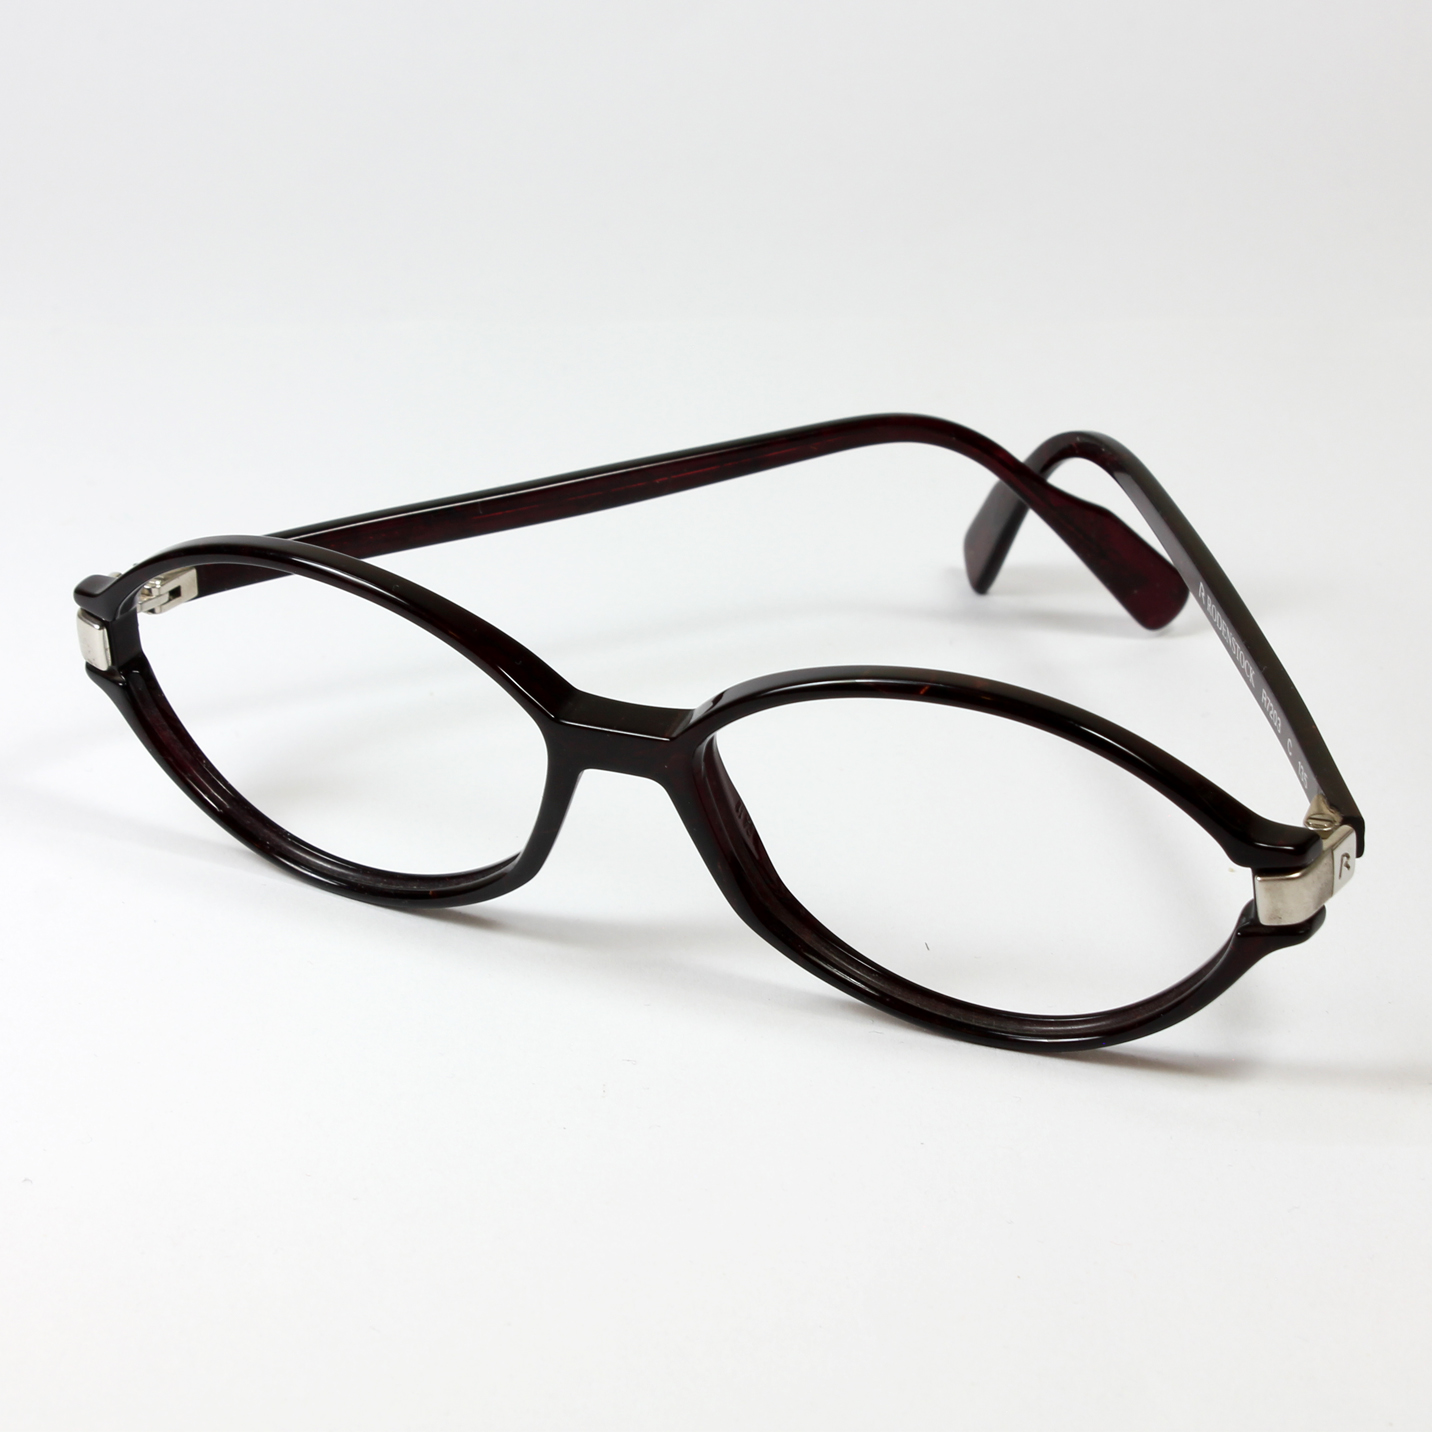 فریم عینک طبی رودن اشتوک مدل R7203 -  - 2